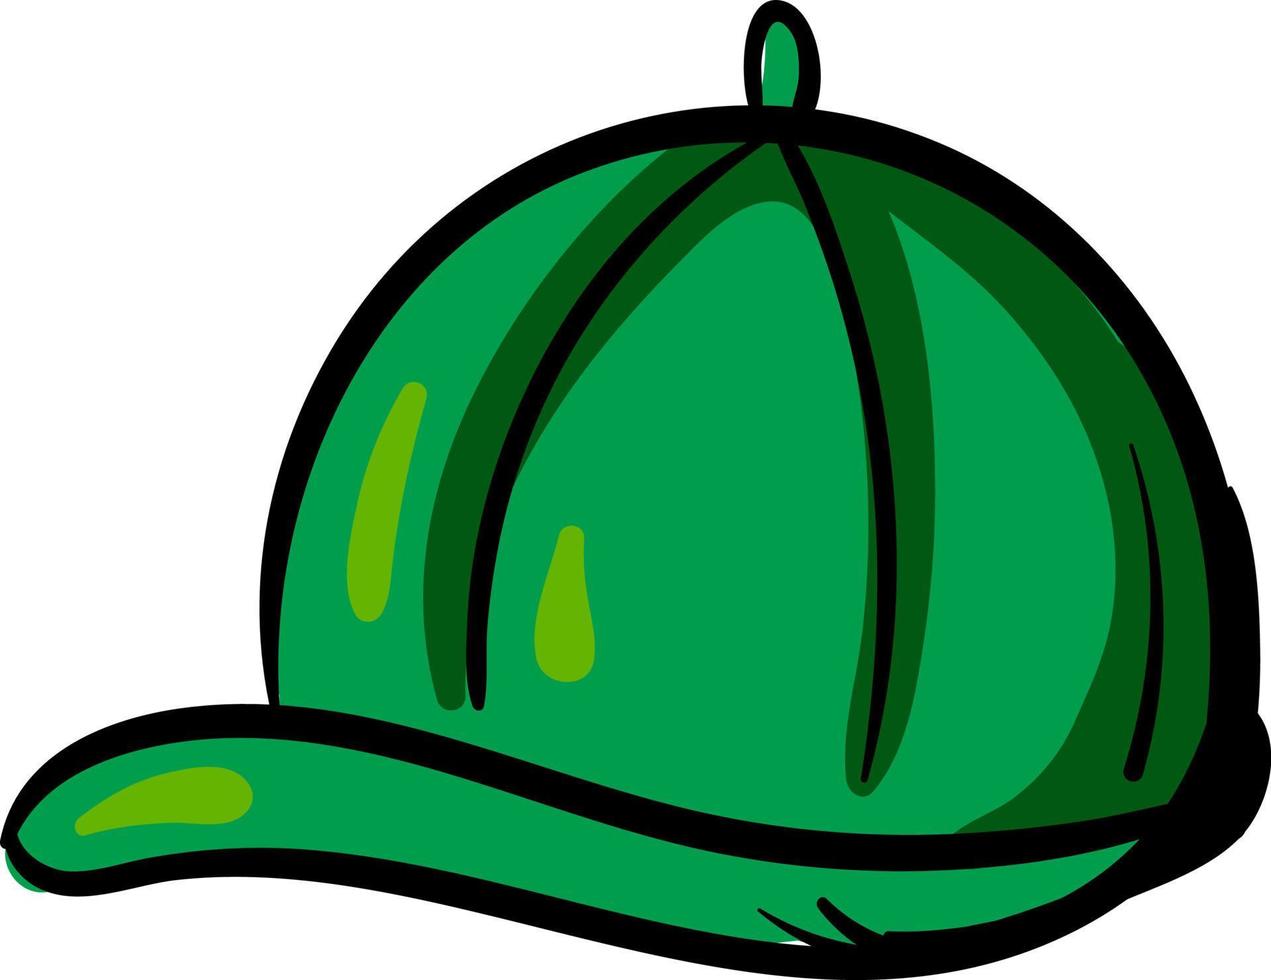 Una gorra verde con un fondo blanco y un fondo blanco.